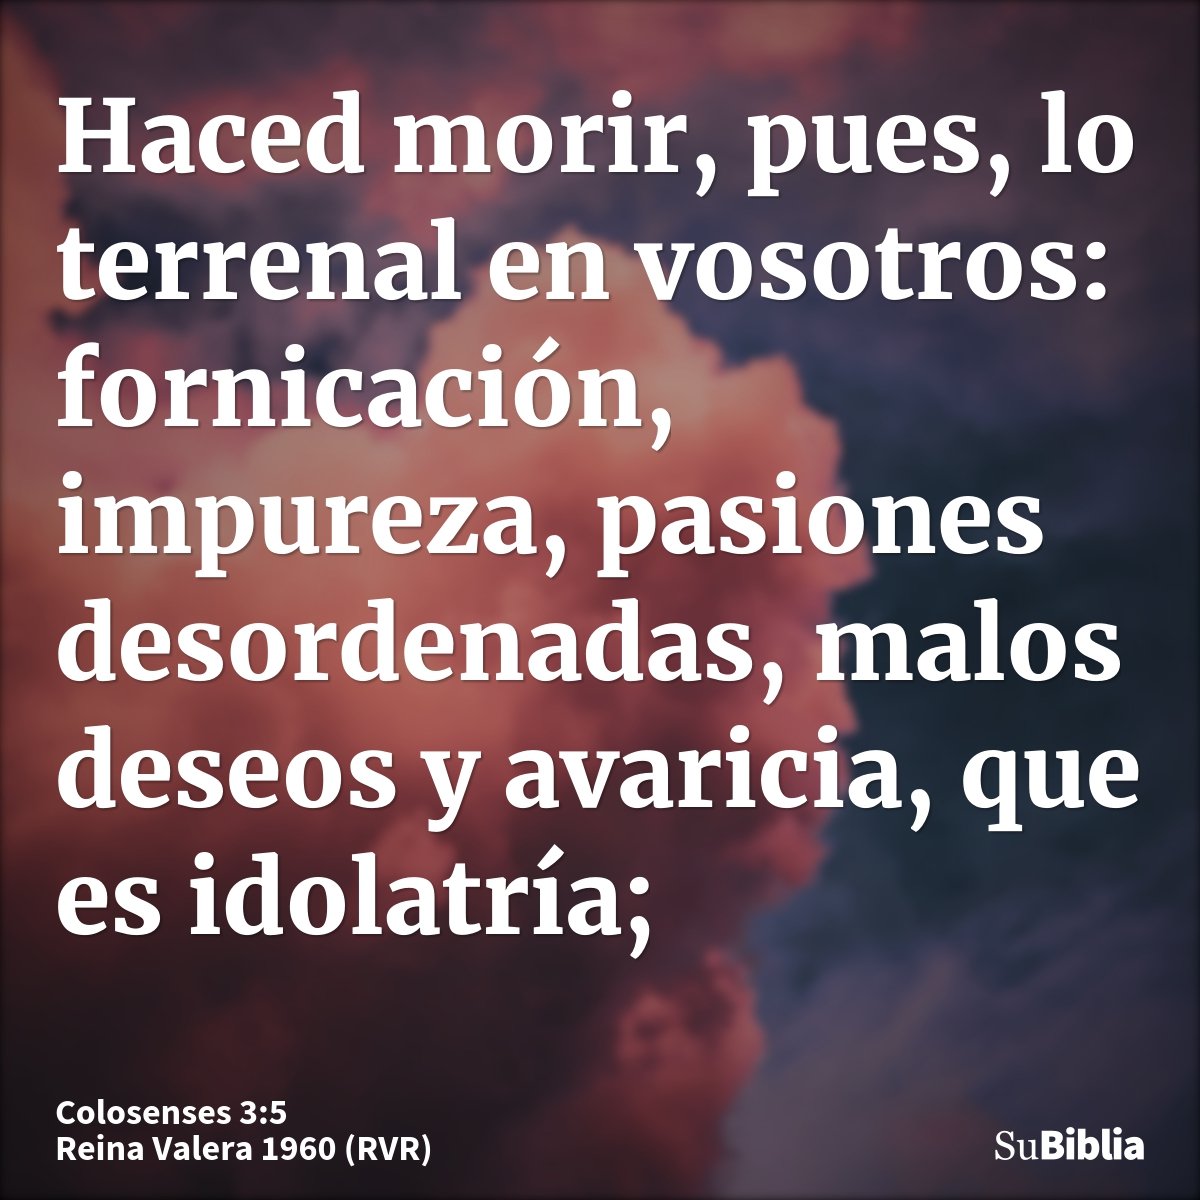 Haced morir, pues, lo terrenal en vosotros: fornicación, impureza, pasiones desordenadas, malos deseos y avaricia, que es idolatría;